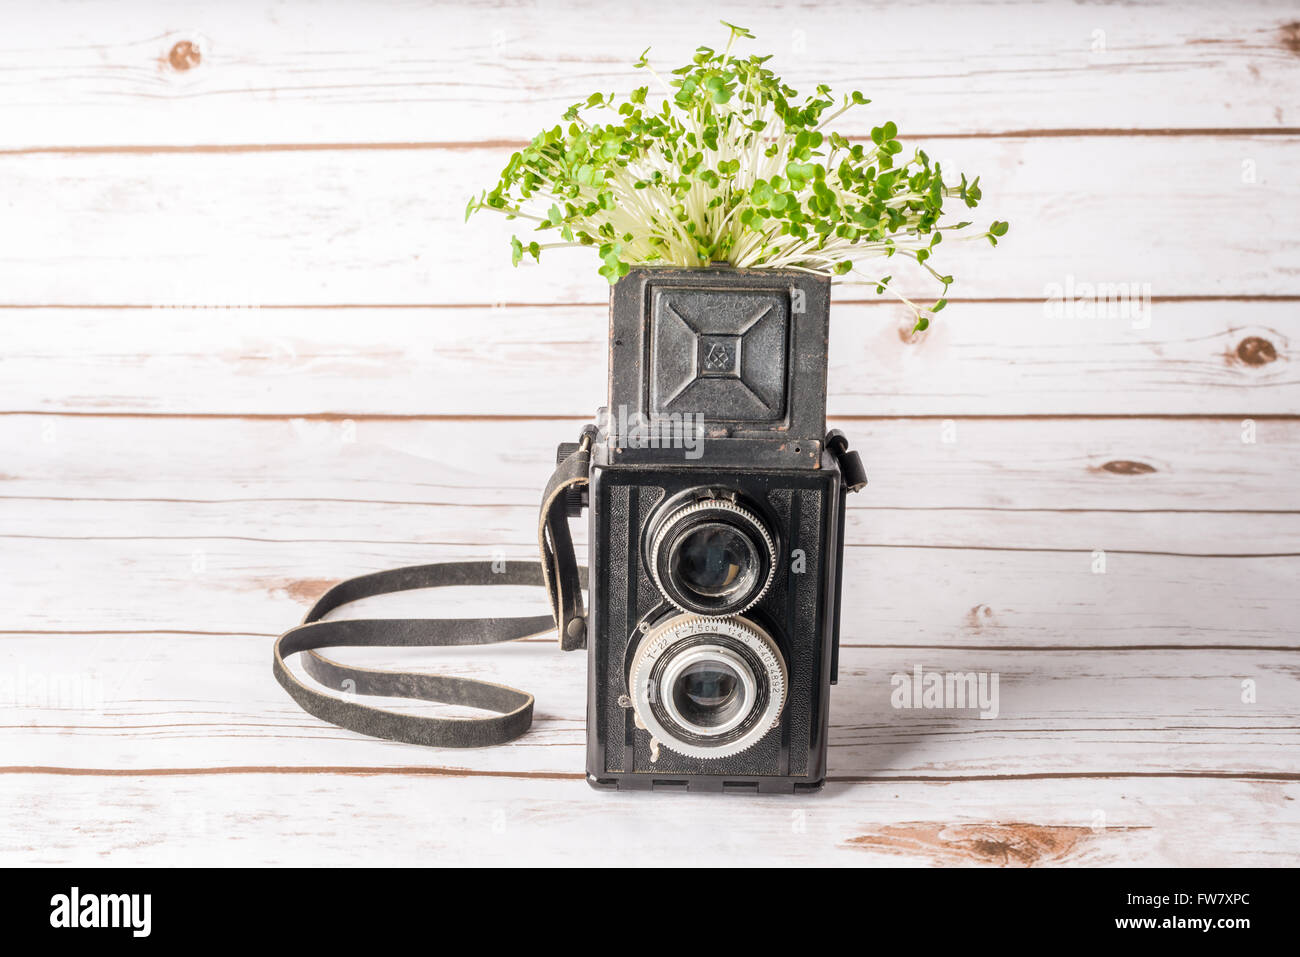 Grüne Pflanze in einer Vintage-Kamera bedeutet Wachstum und die Entwicklung von einem Foto-Geschäft Stockfoto